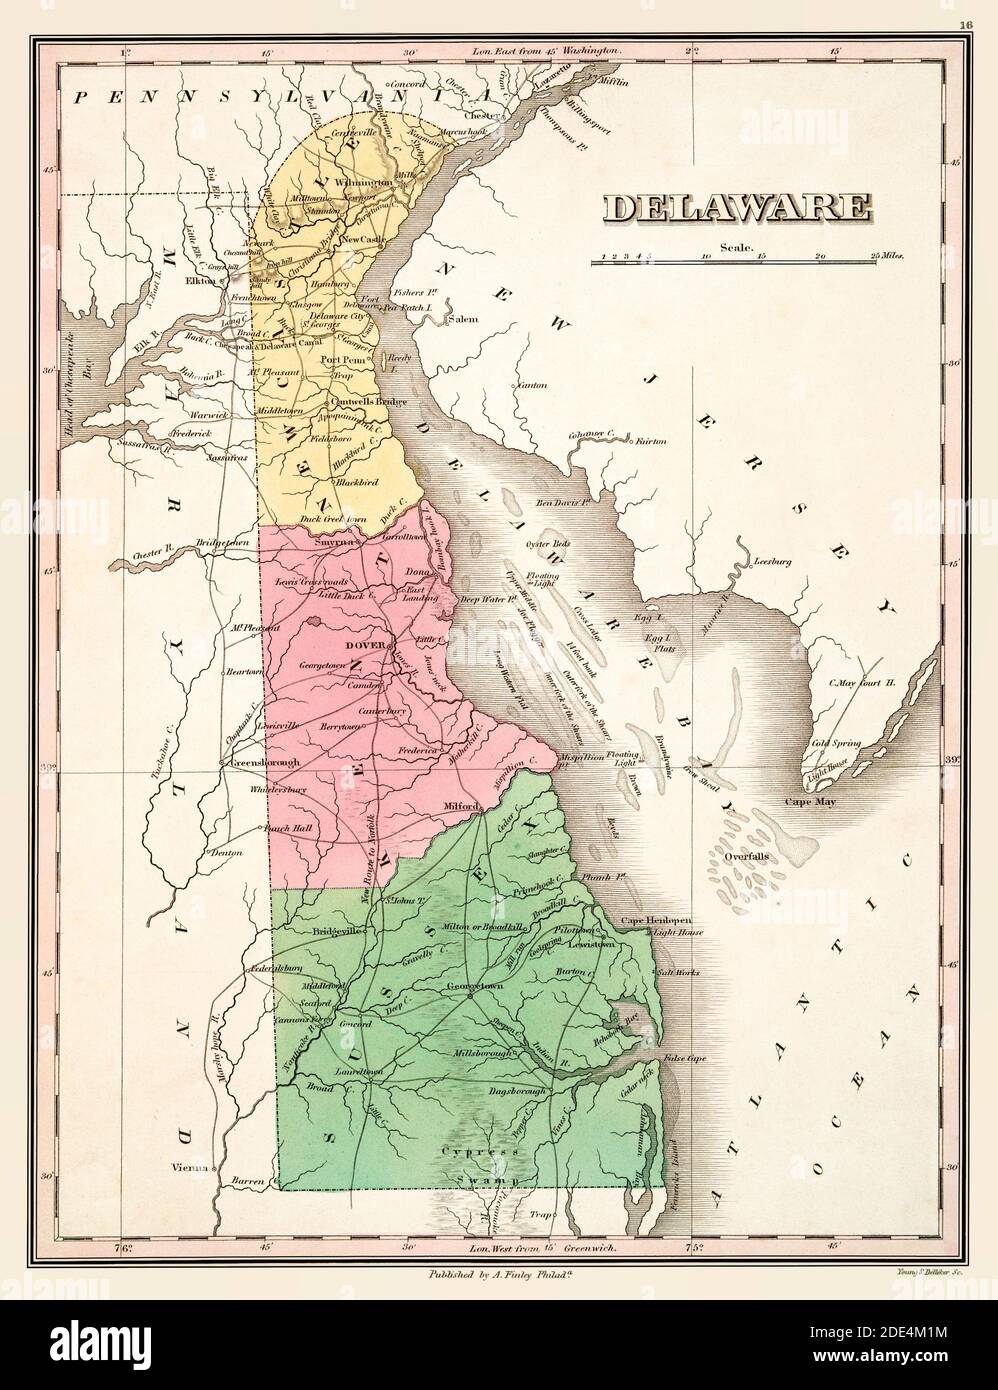 Carte du Delaware Circa 1824. Il s'agit d'une reproduction améliorée et restaurée d'une ancienne carte du Delaware vers 1824. Il montre ses trois comtés en couleur. Affiche les villes et les caractéristiques géographiques. Banque D'Images